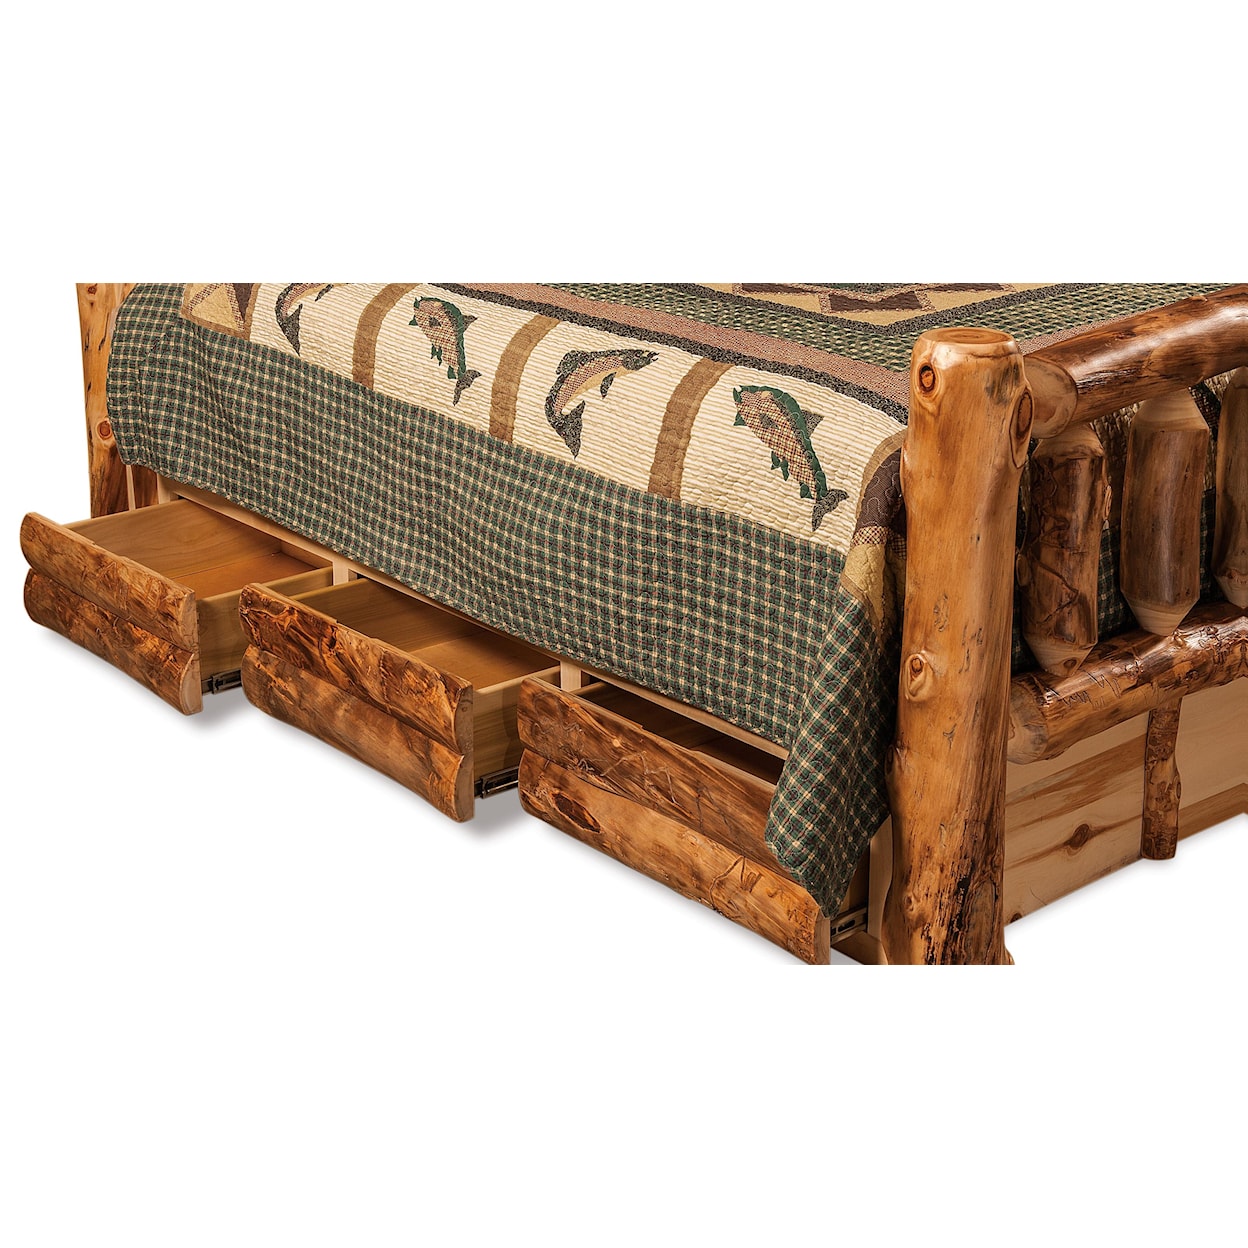 Fireside Log Furniture Log Bedroom King Bookcase Storage Bed